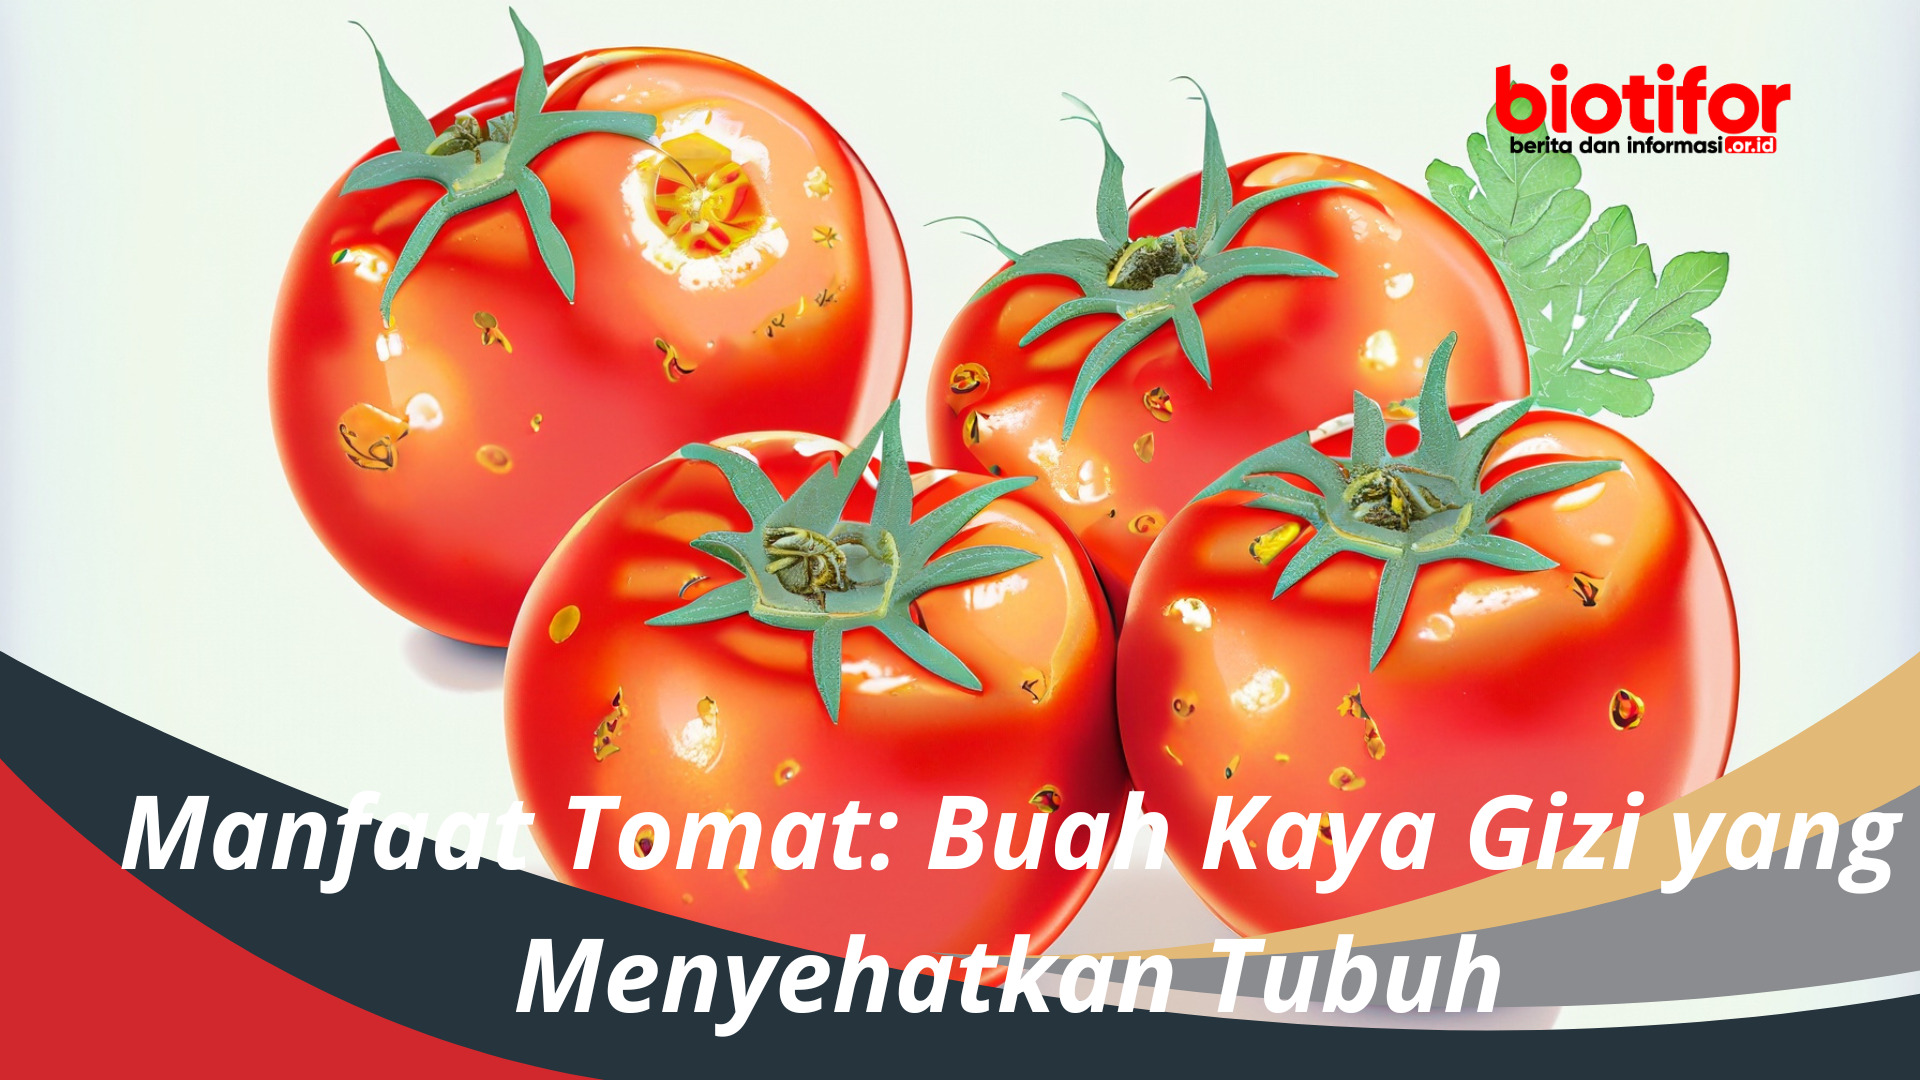 Manfaat Tomat Buah Kaya Gizi yang Menyehatkan Tubuh